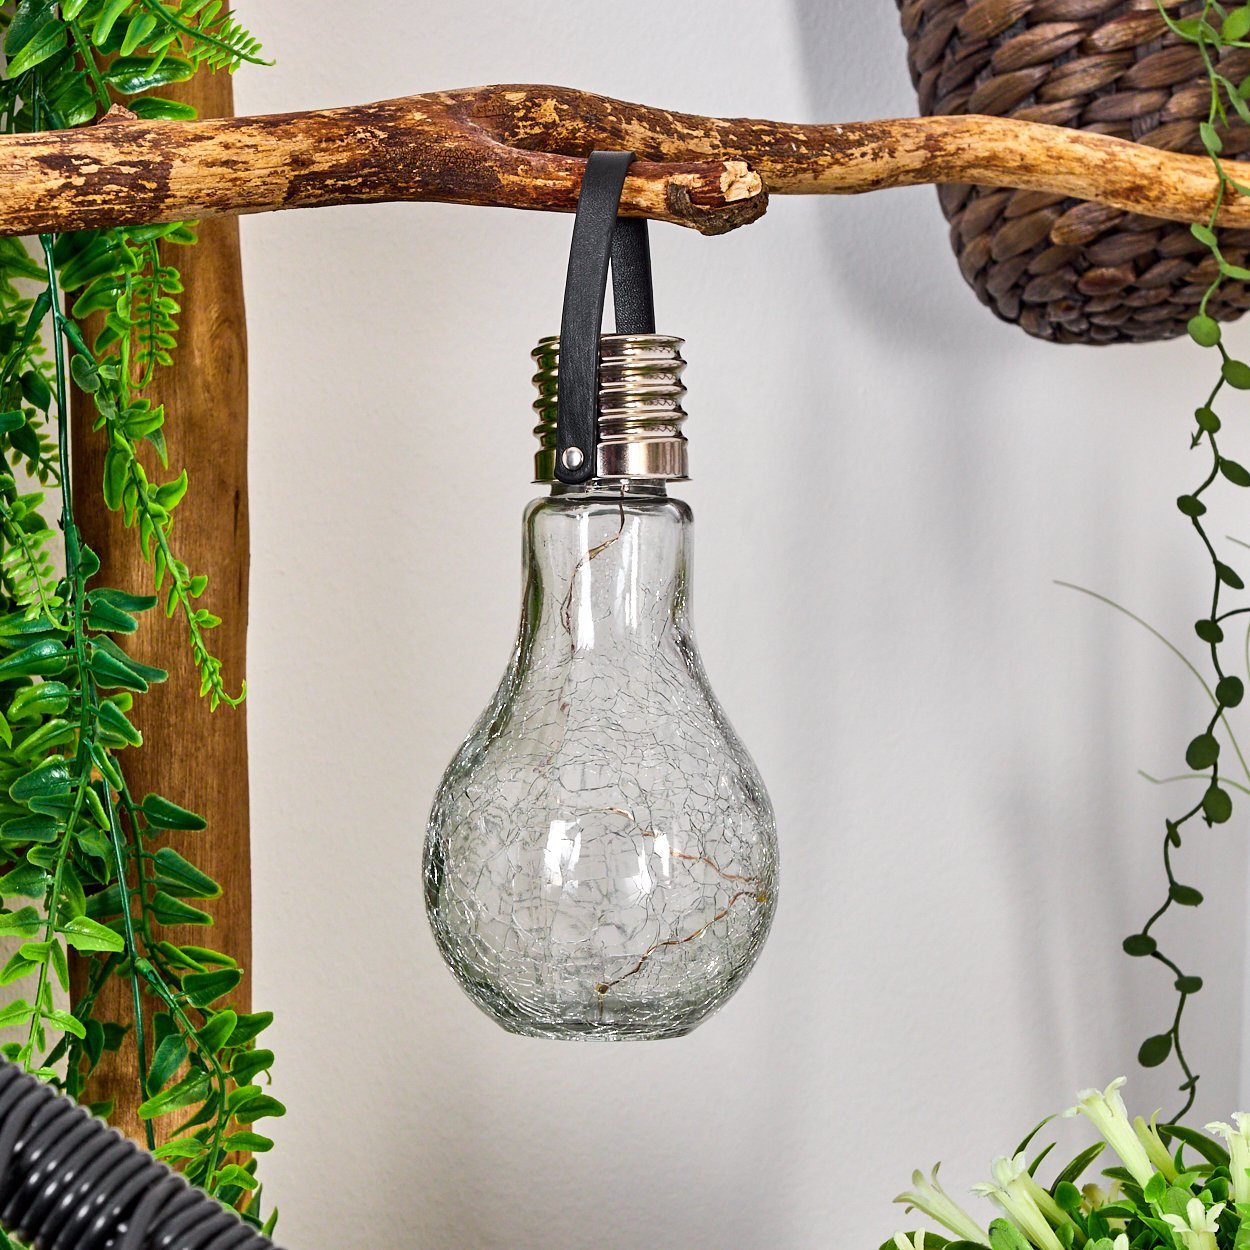 Solarleuchte Gartenlampe Solarpanel, aus Ein-/Ausschalter, LED, »Marta« Solarleuchte Echtglas, nötig LED hofstein mit Stromanschluß kein